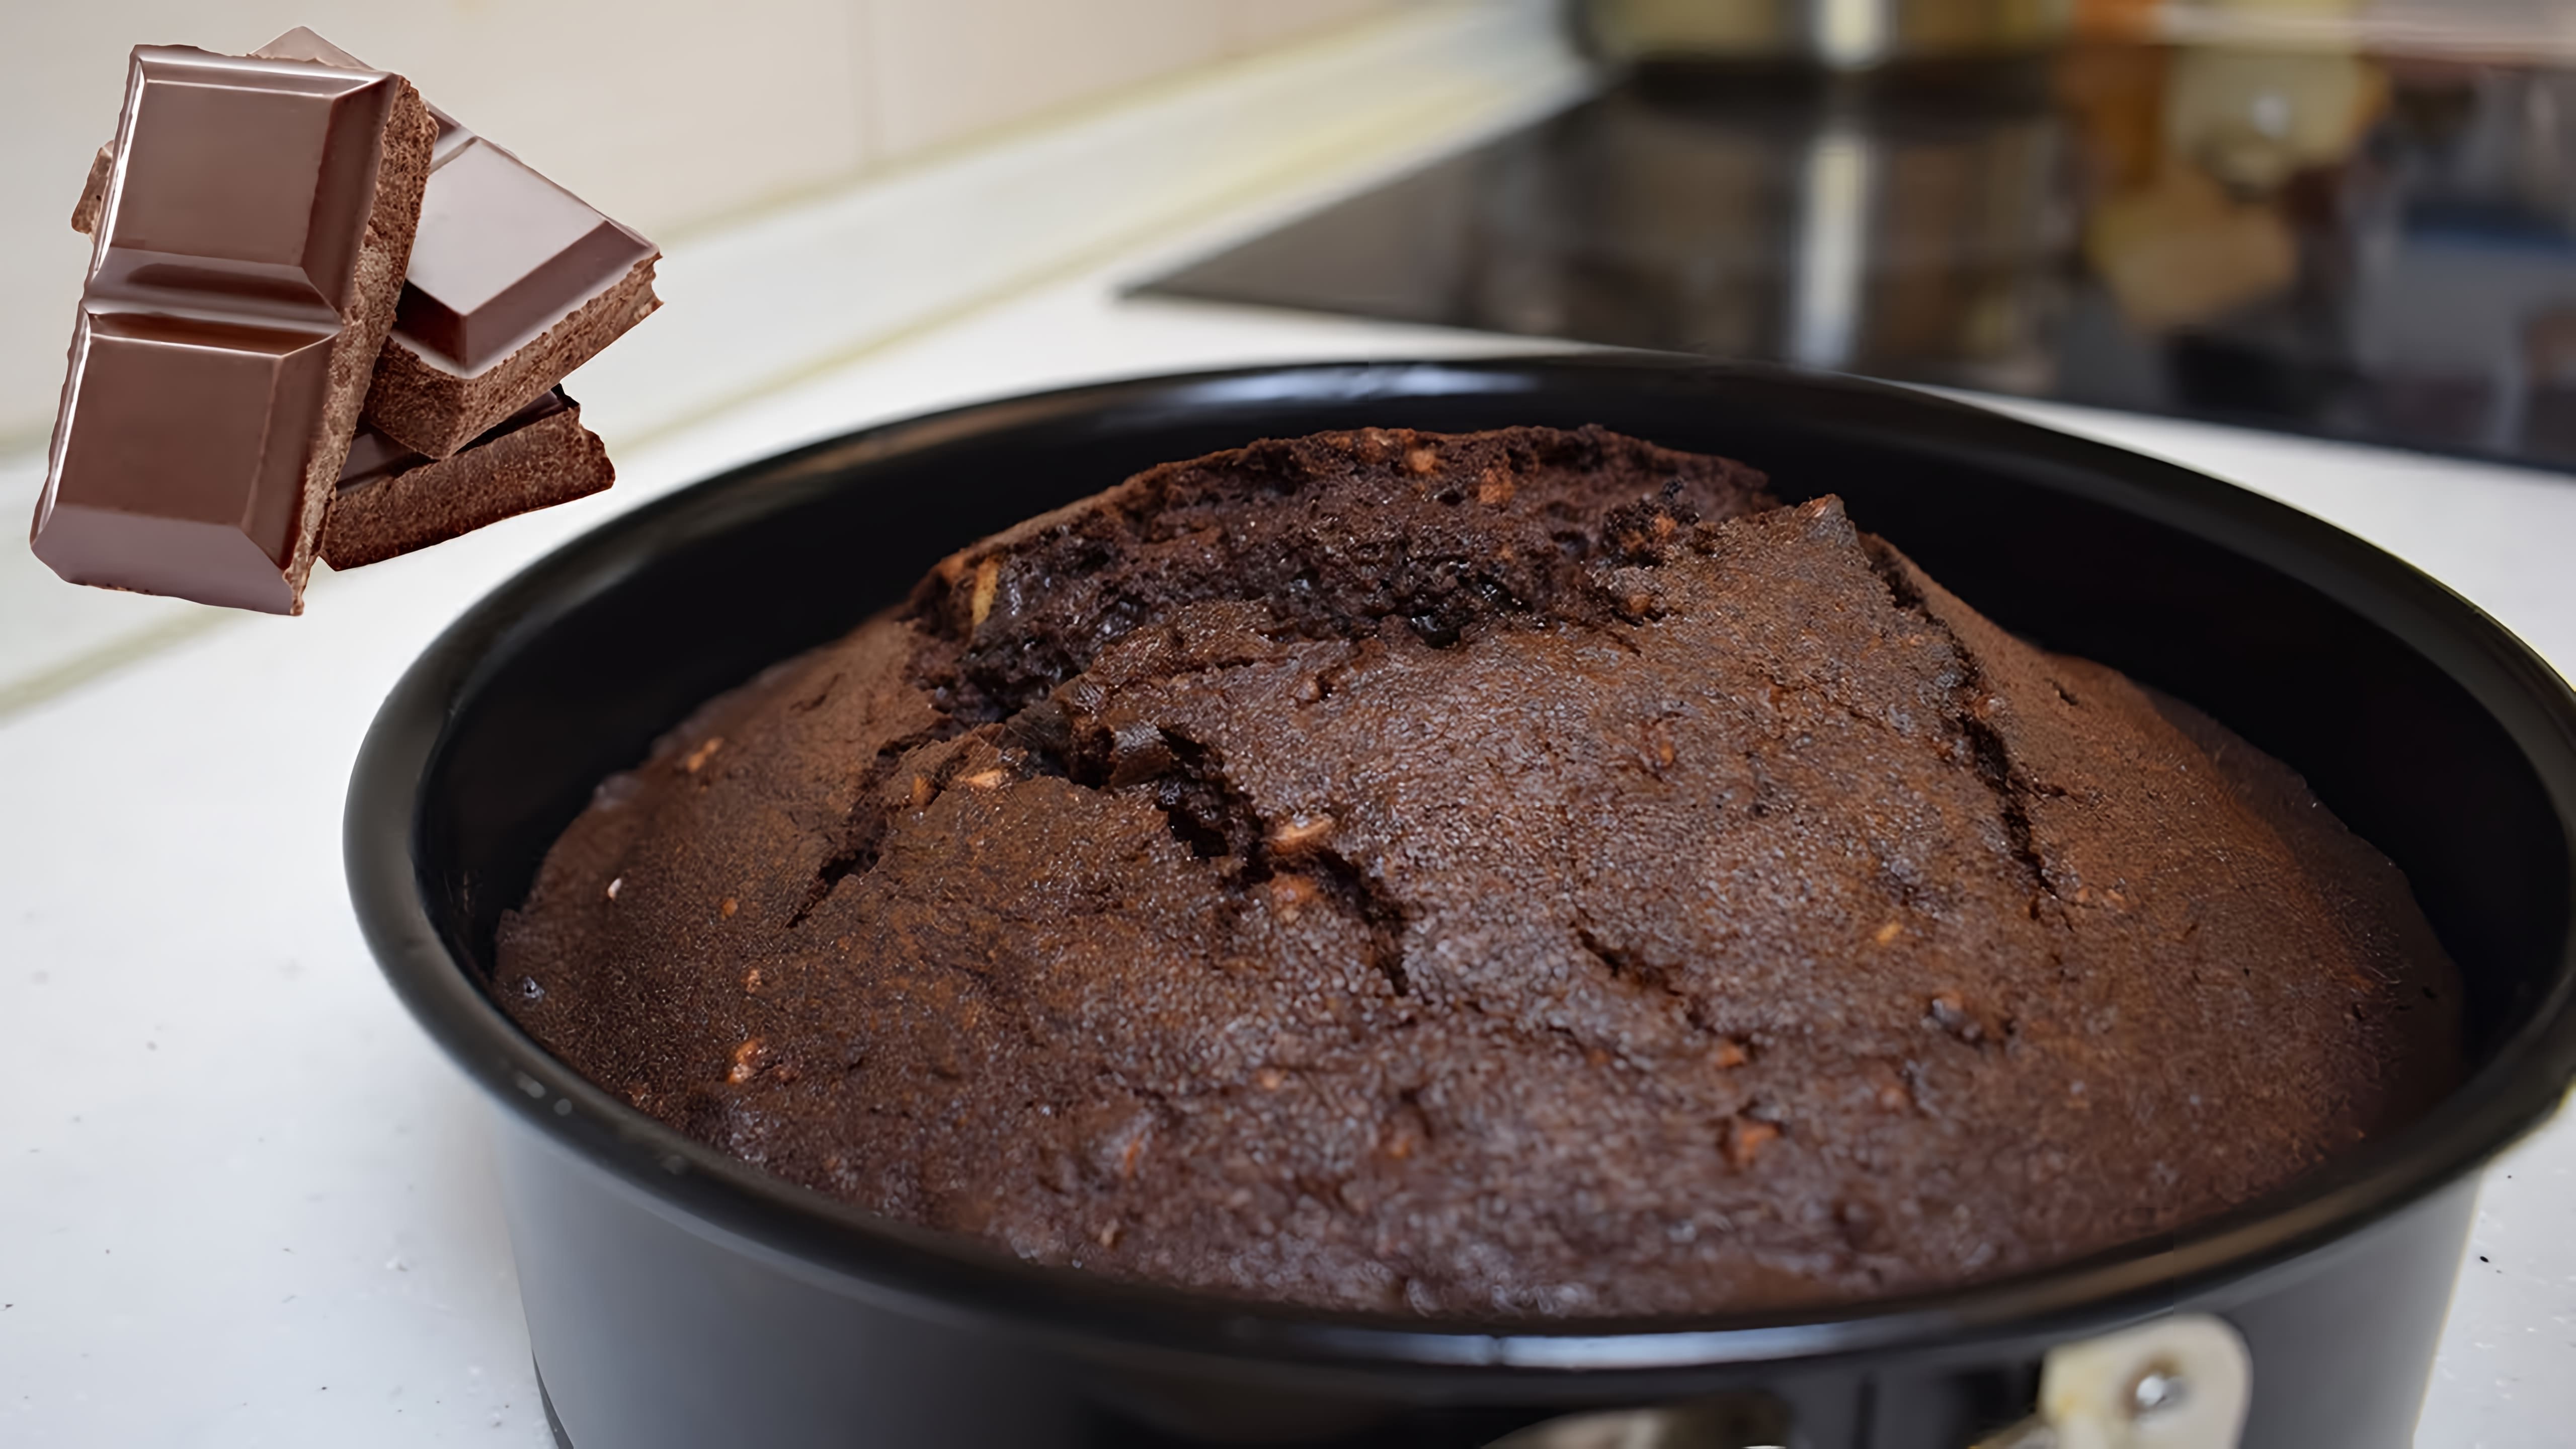 В этом видео демонстрируется процесс приготовления шоколадного пирога с орехами